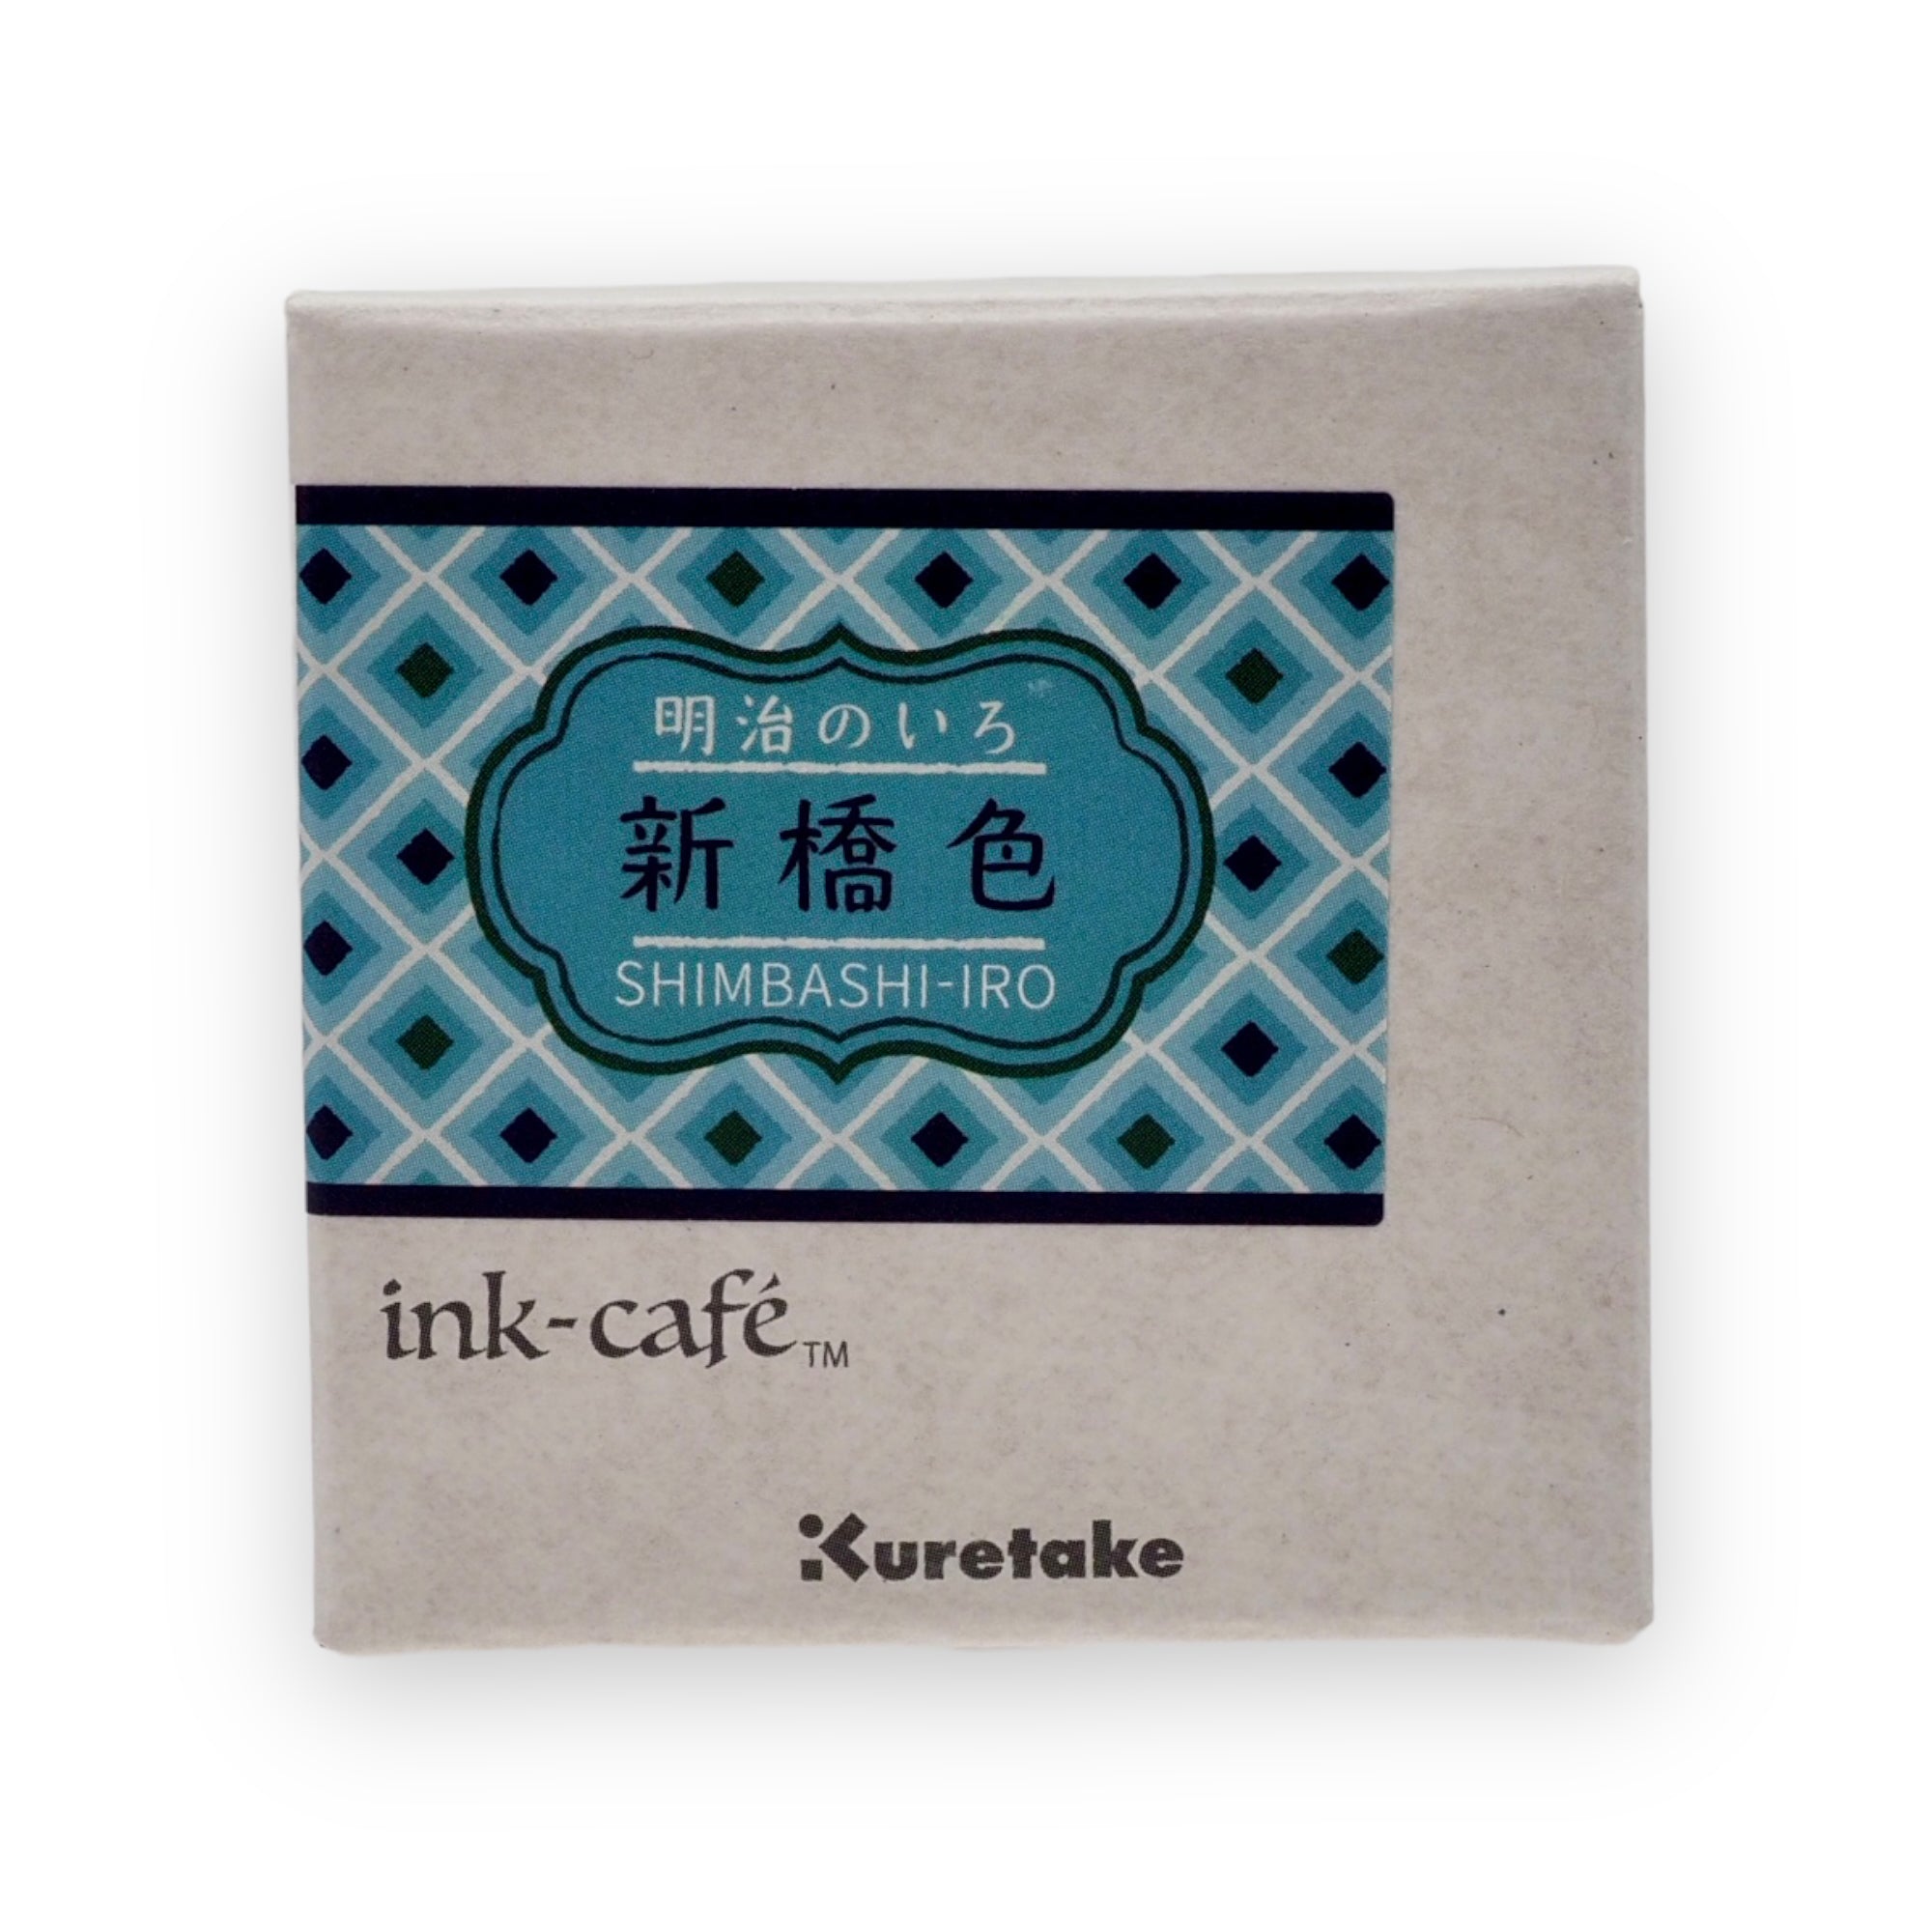 Kuretake - Ink Cafe Shimbashi-iro